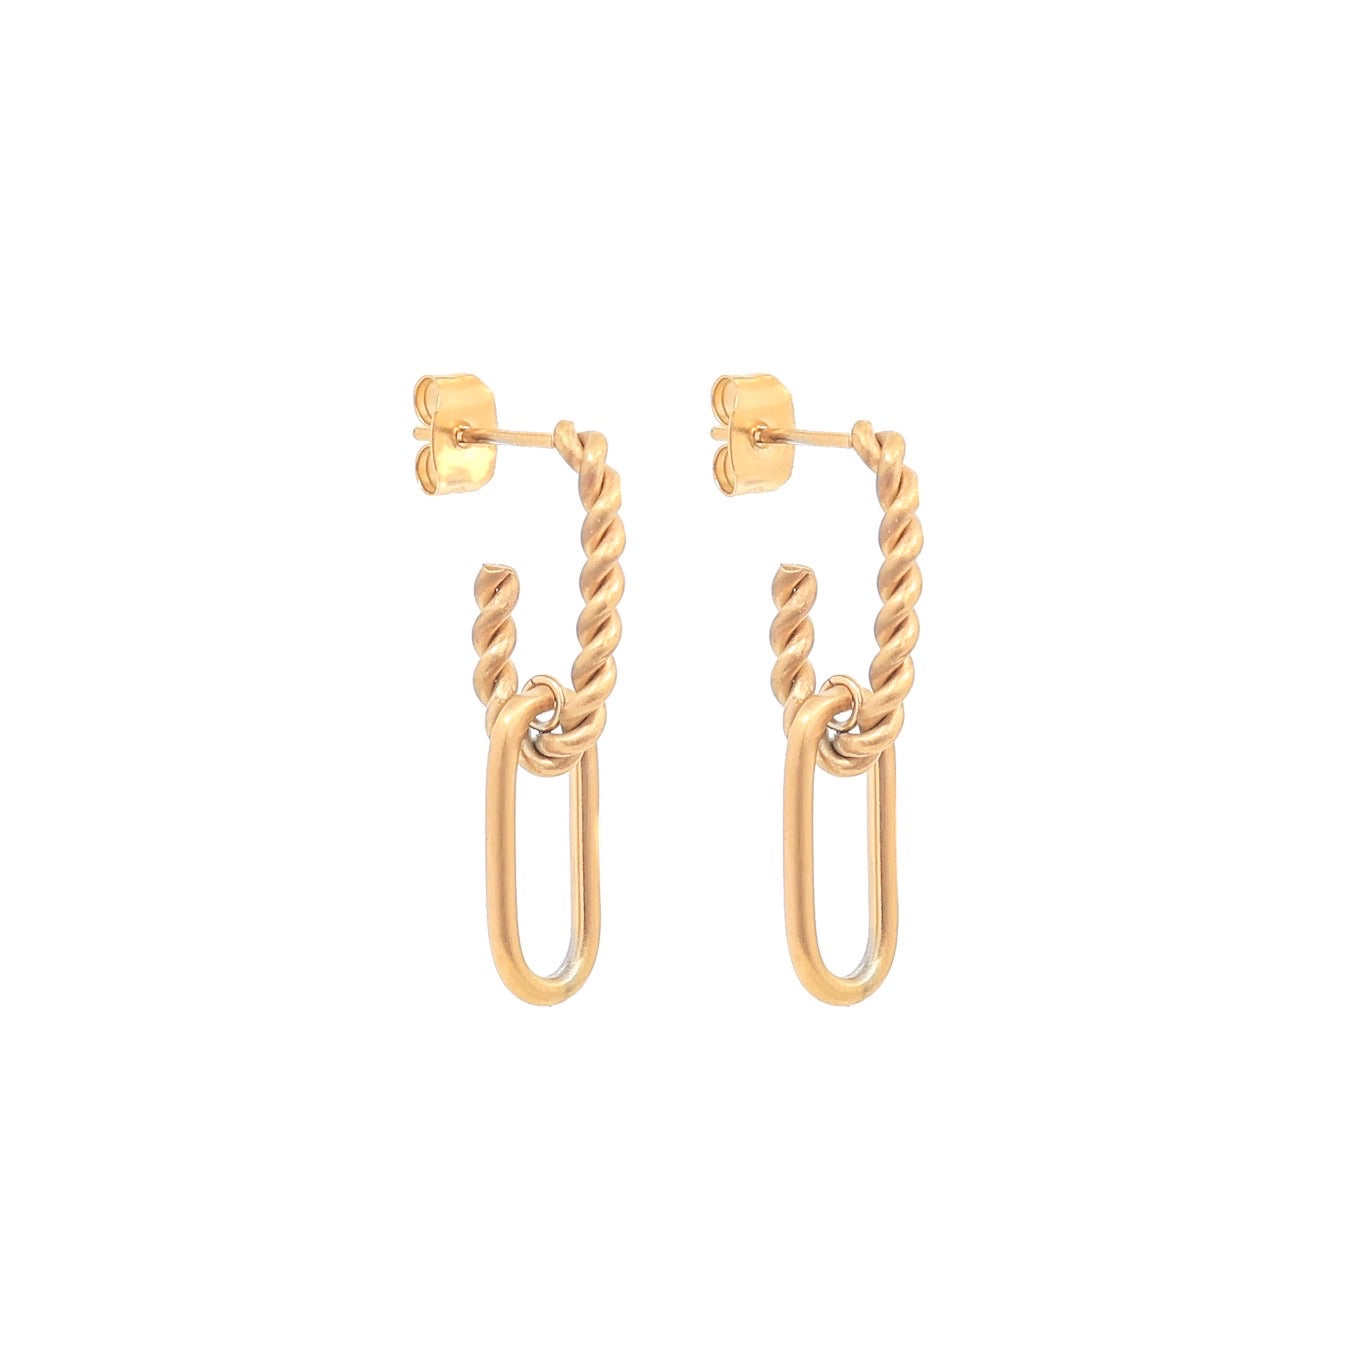 Malin chain stud earrings